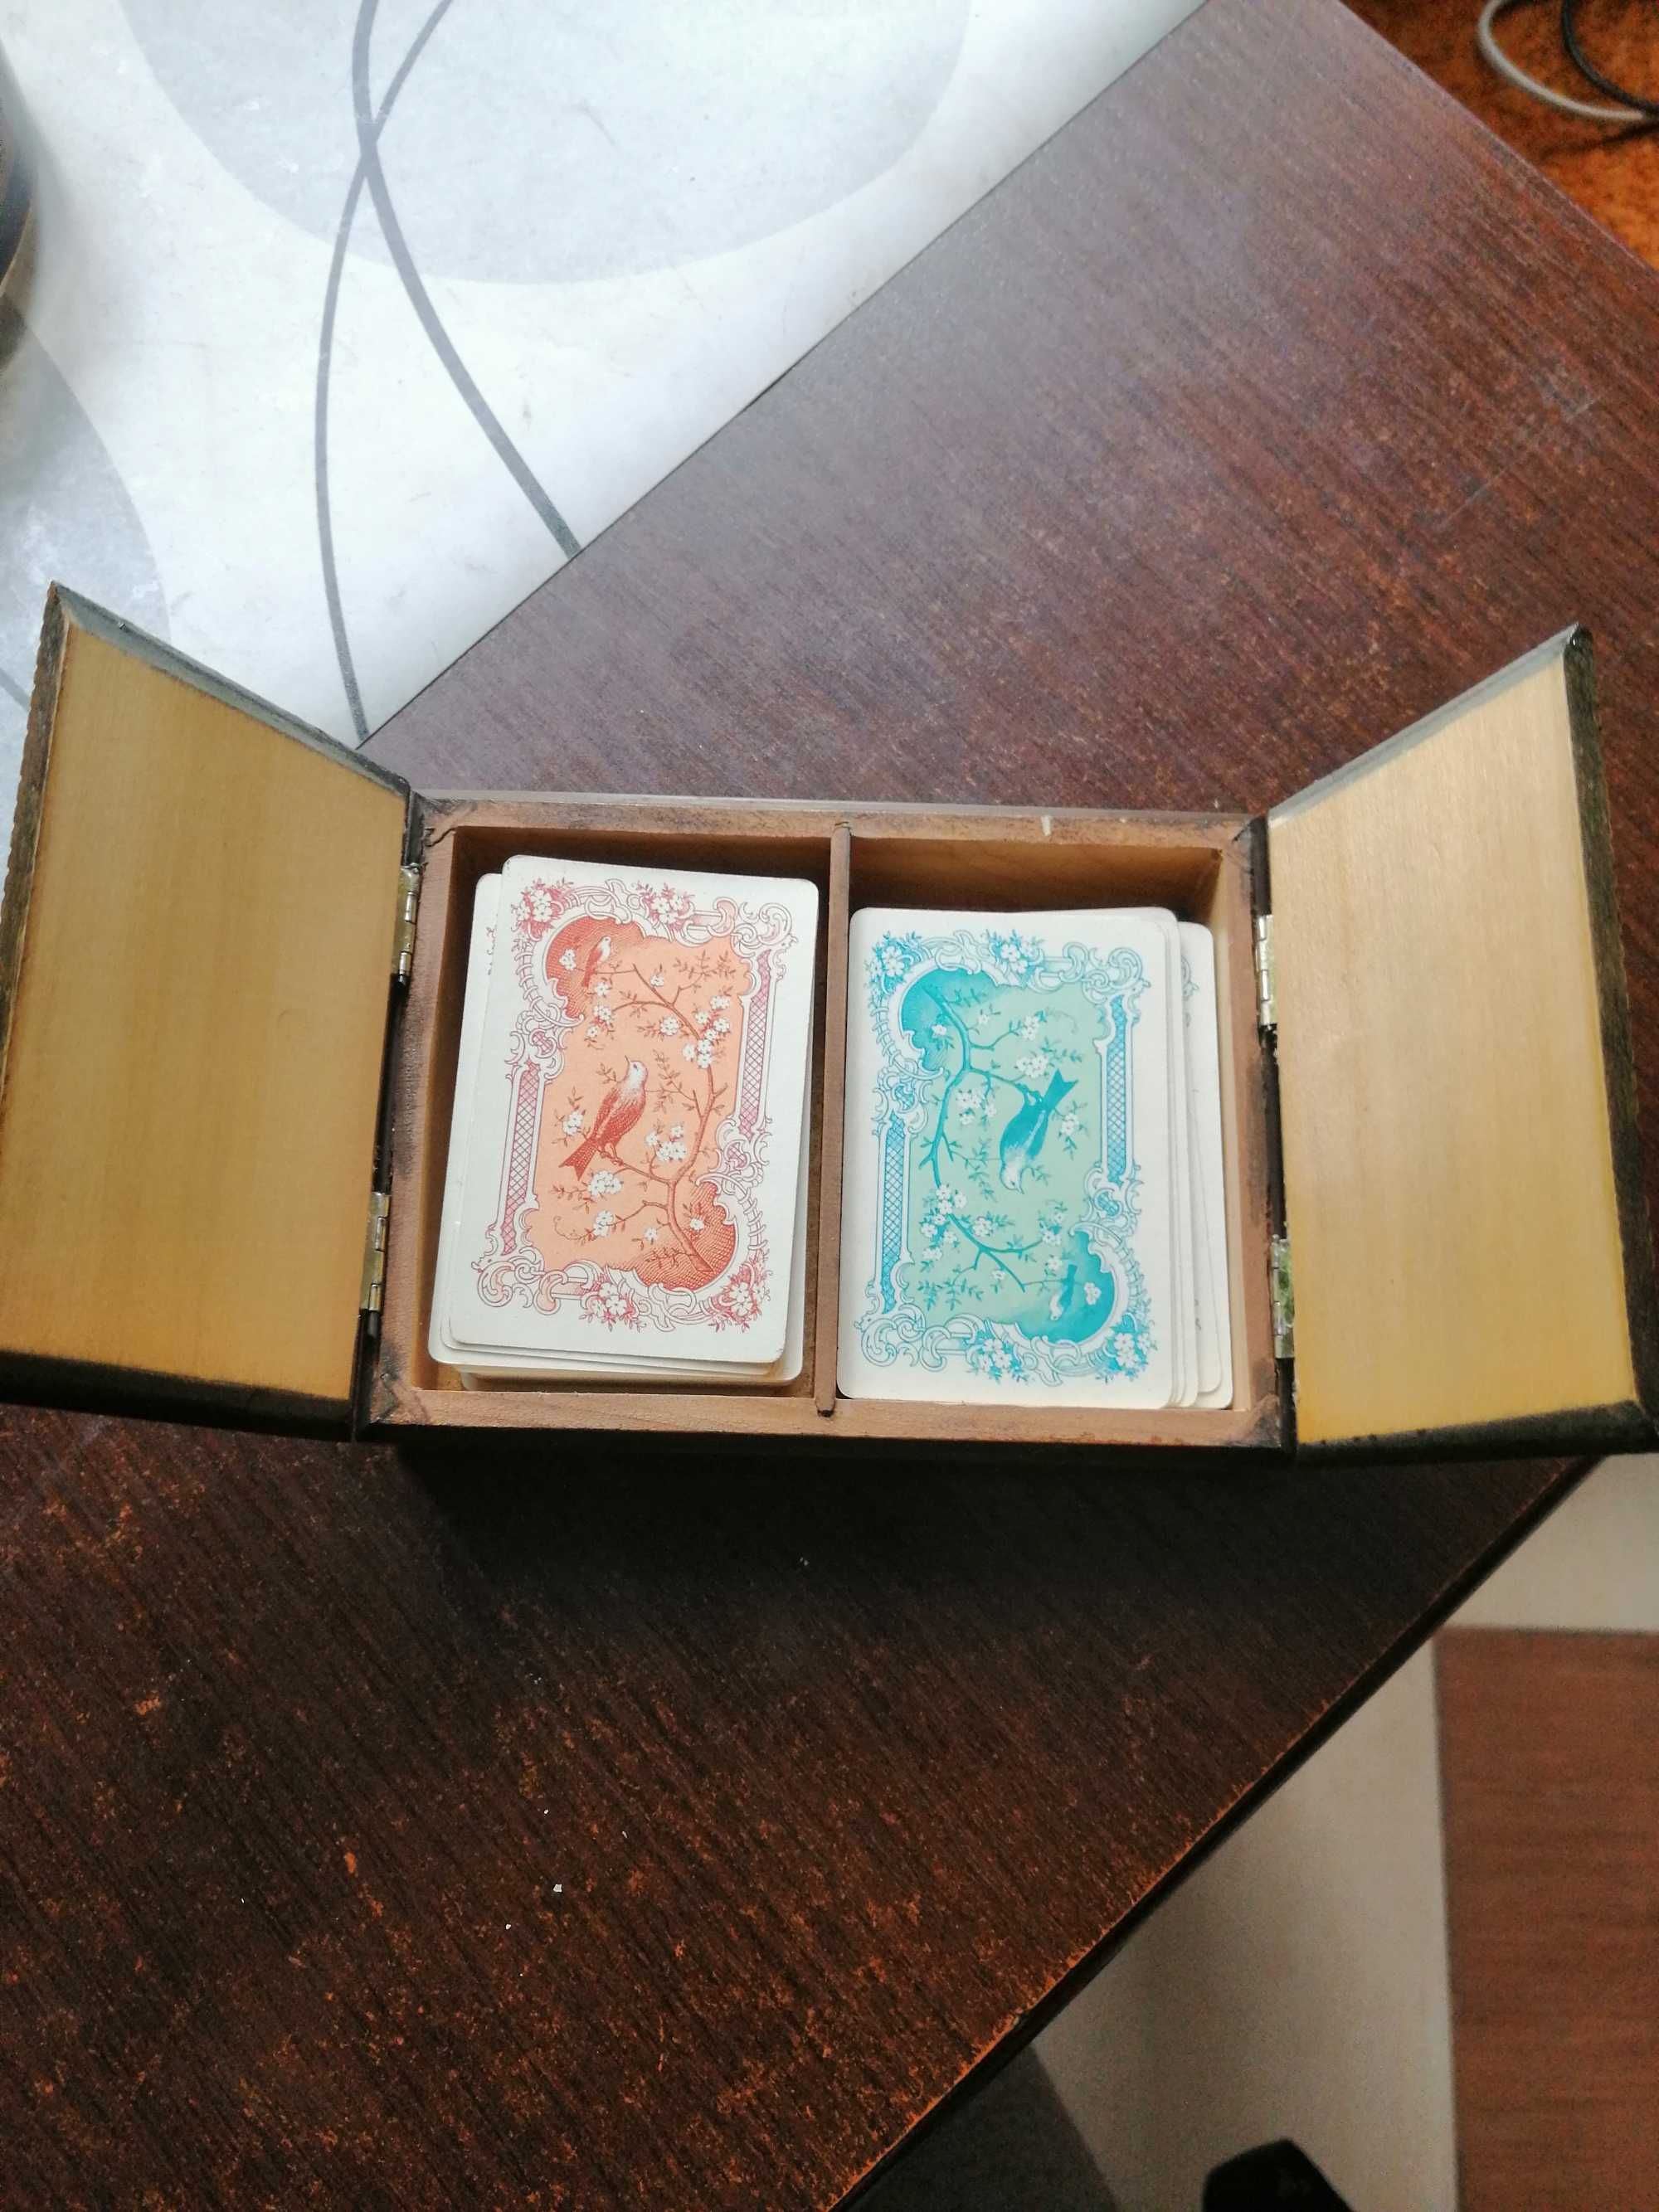 karty do gry w drewnianym pudełku małe ,pasjans itp